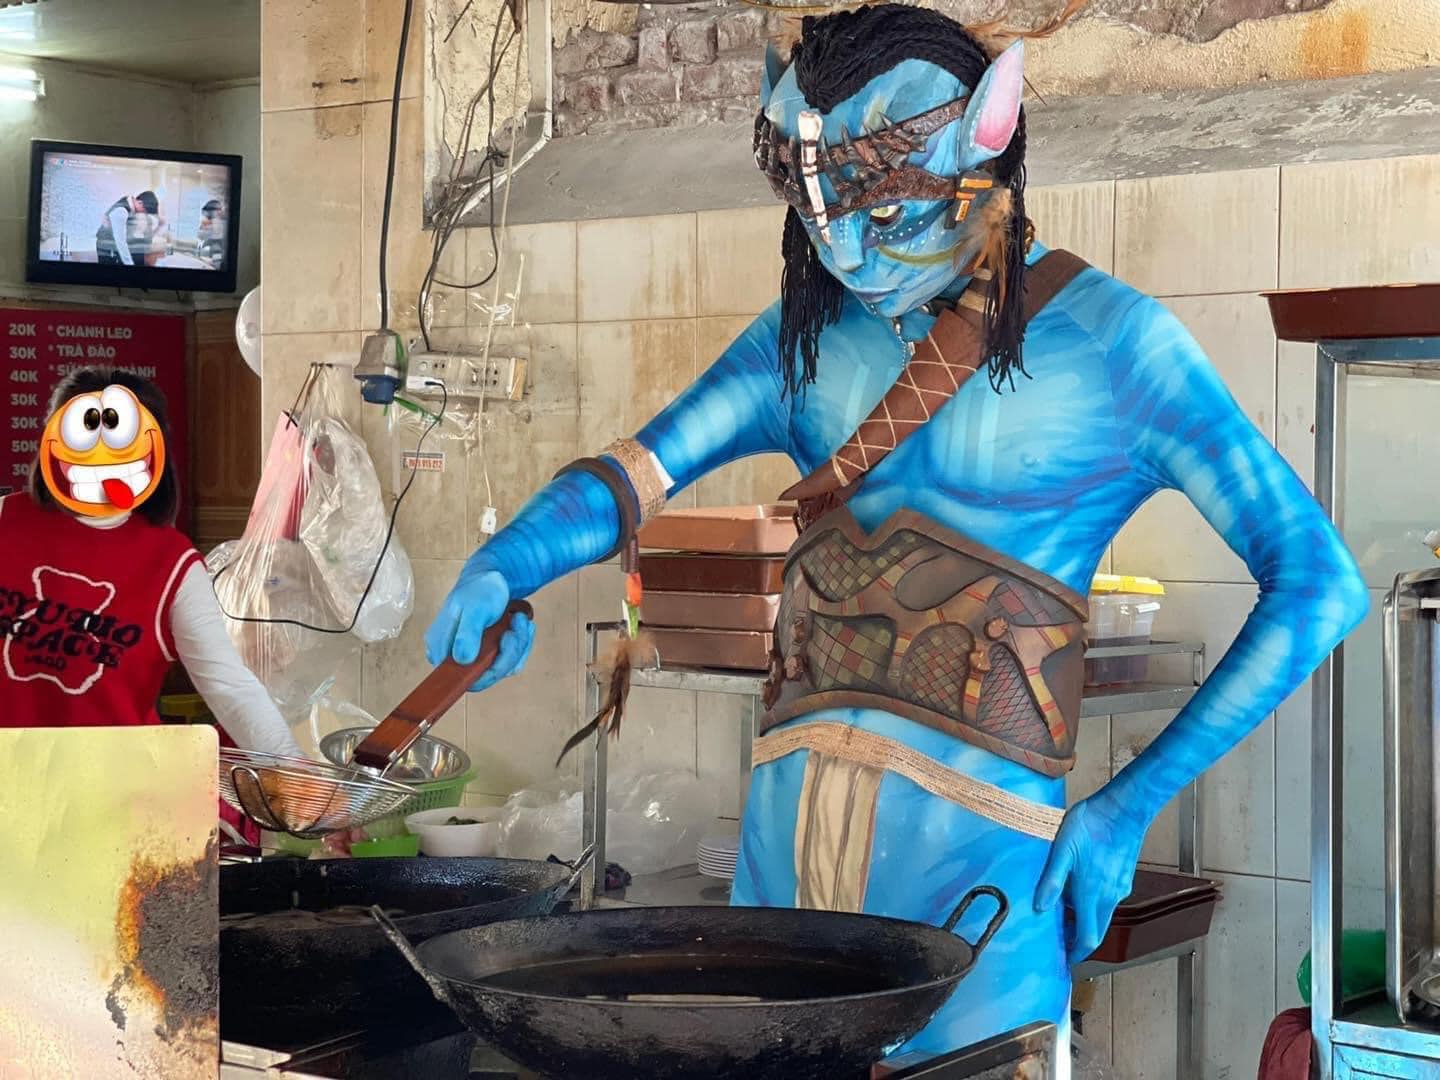 Lan truyền hình ảnh nhân vật trong 'Avatar' xuất hiện trên đường phố Việt Nam khiến CĐM dở khóc dở cười - ảnh 3